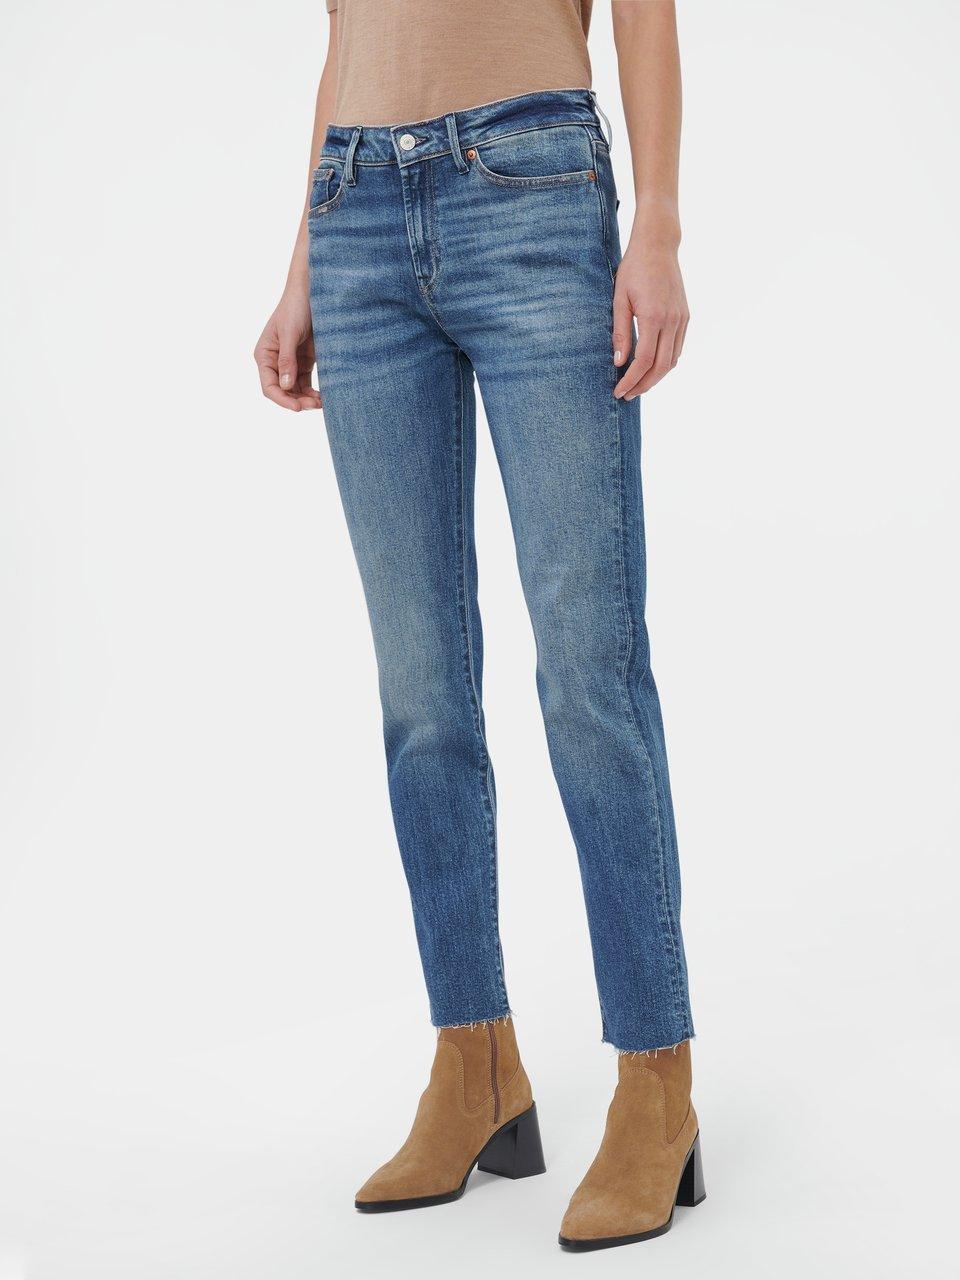 Denham - Jeans "Jolie" in Inch-Länge 30